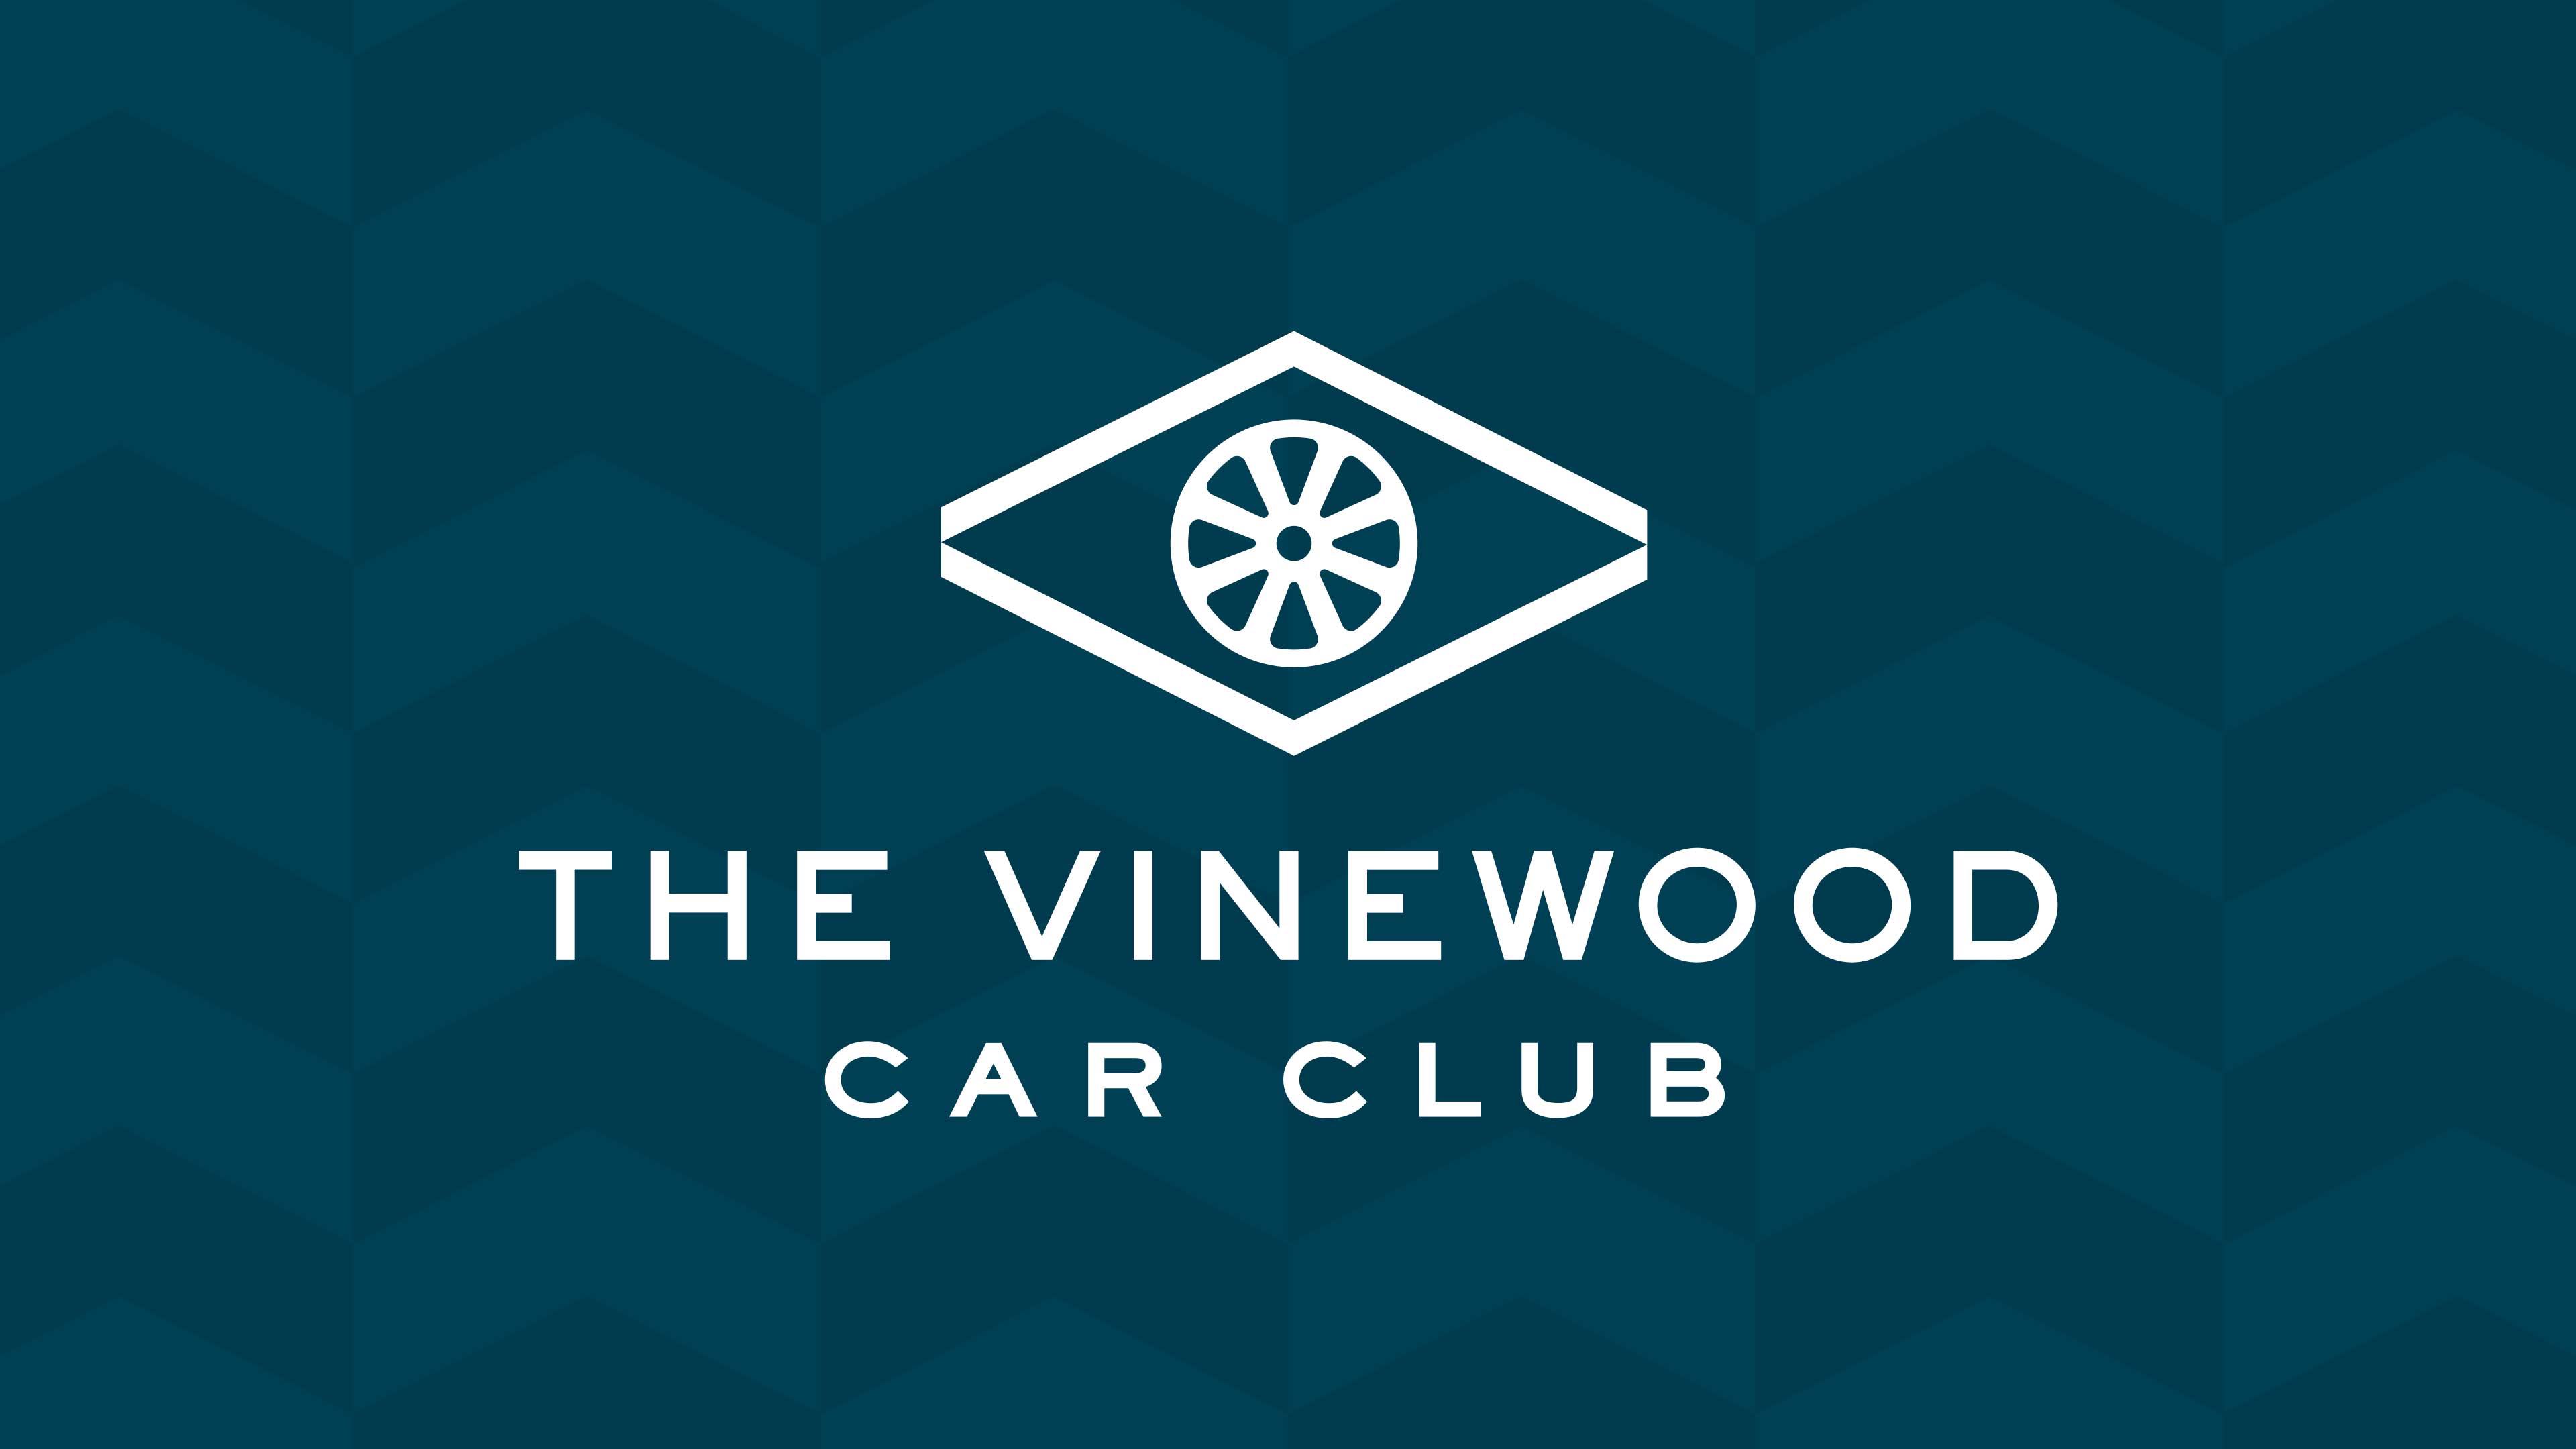 Logotipo do Clube de Carros Vinewood em fundo azul